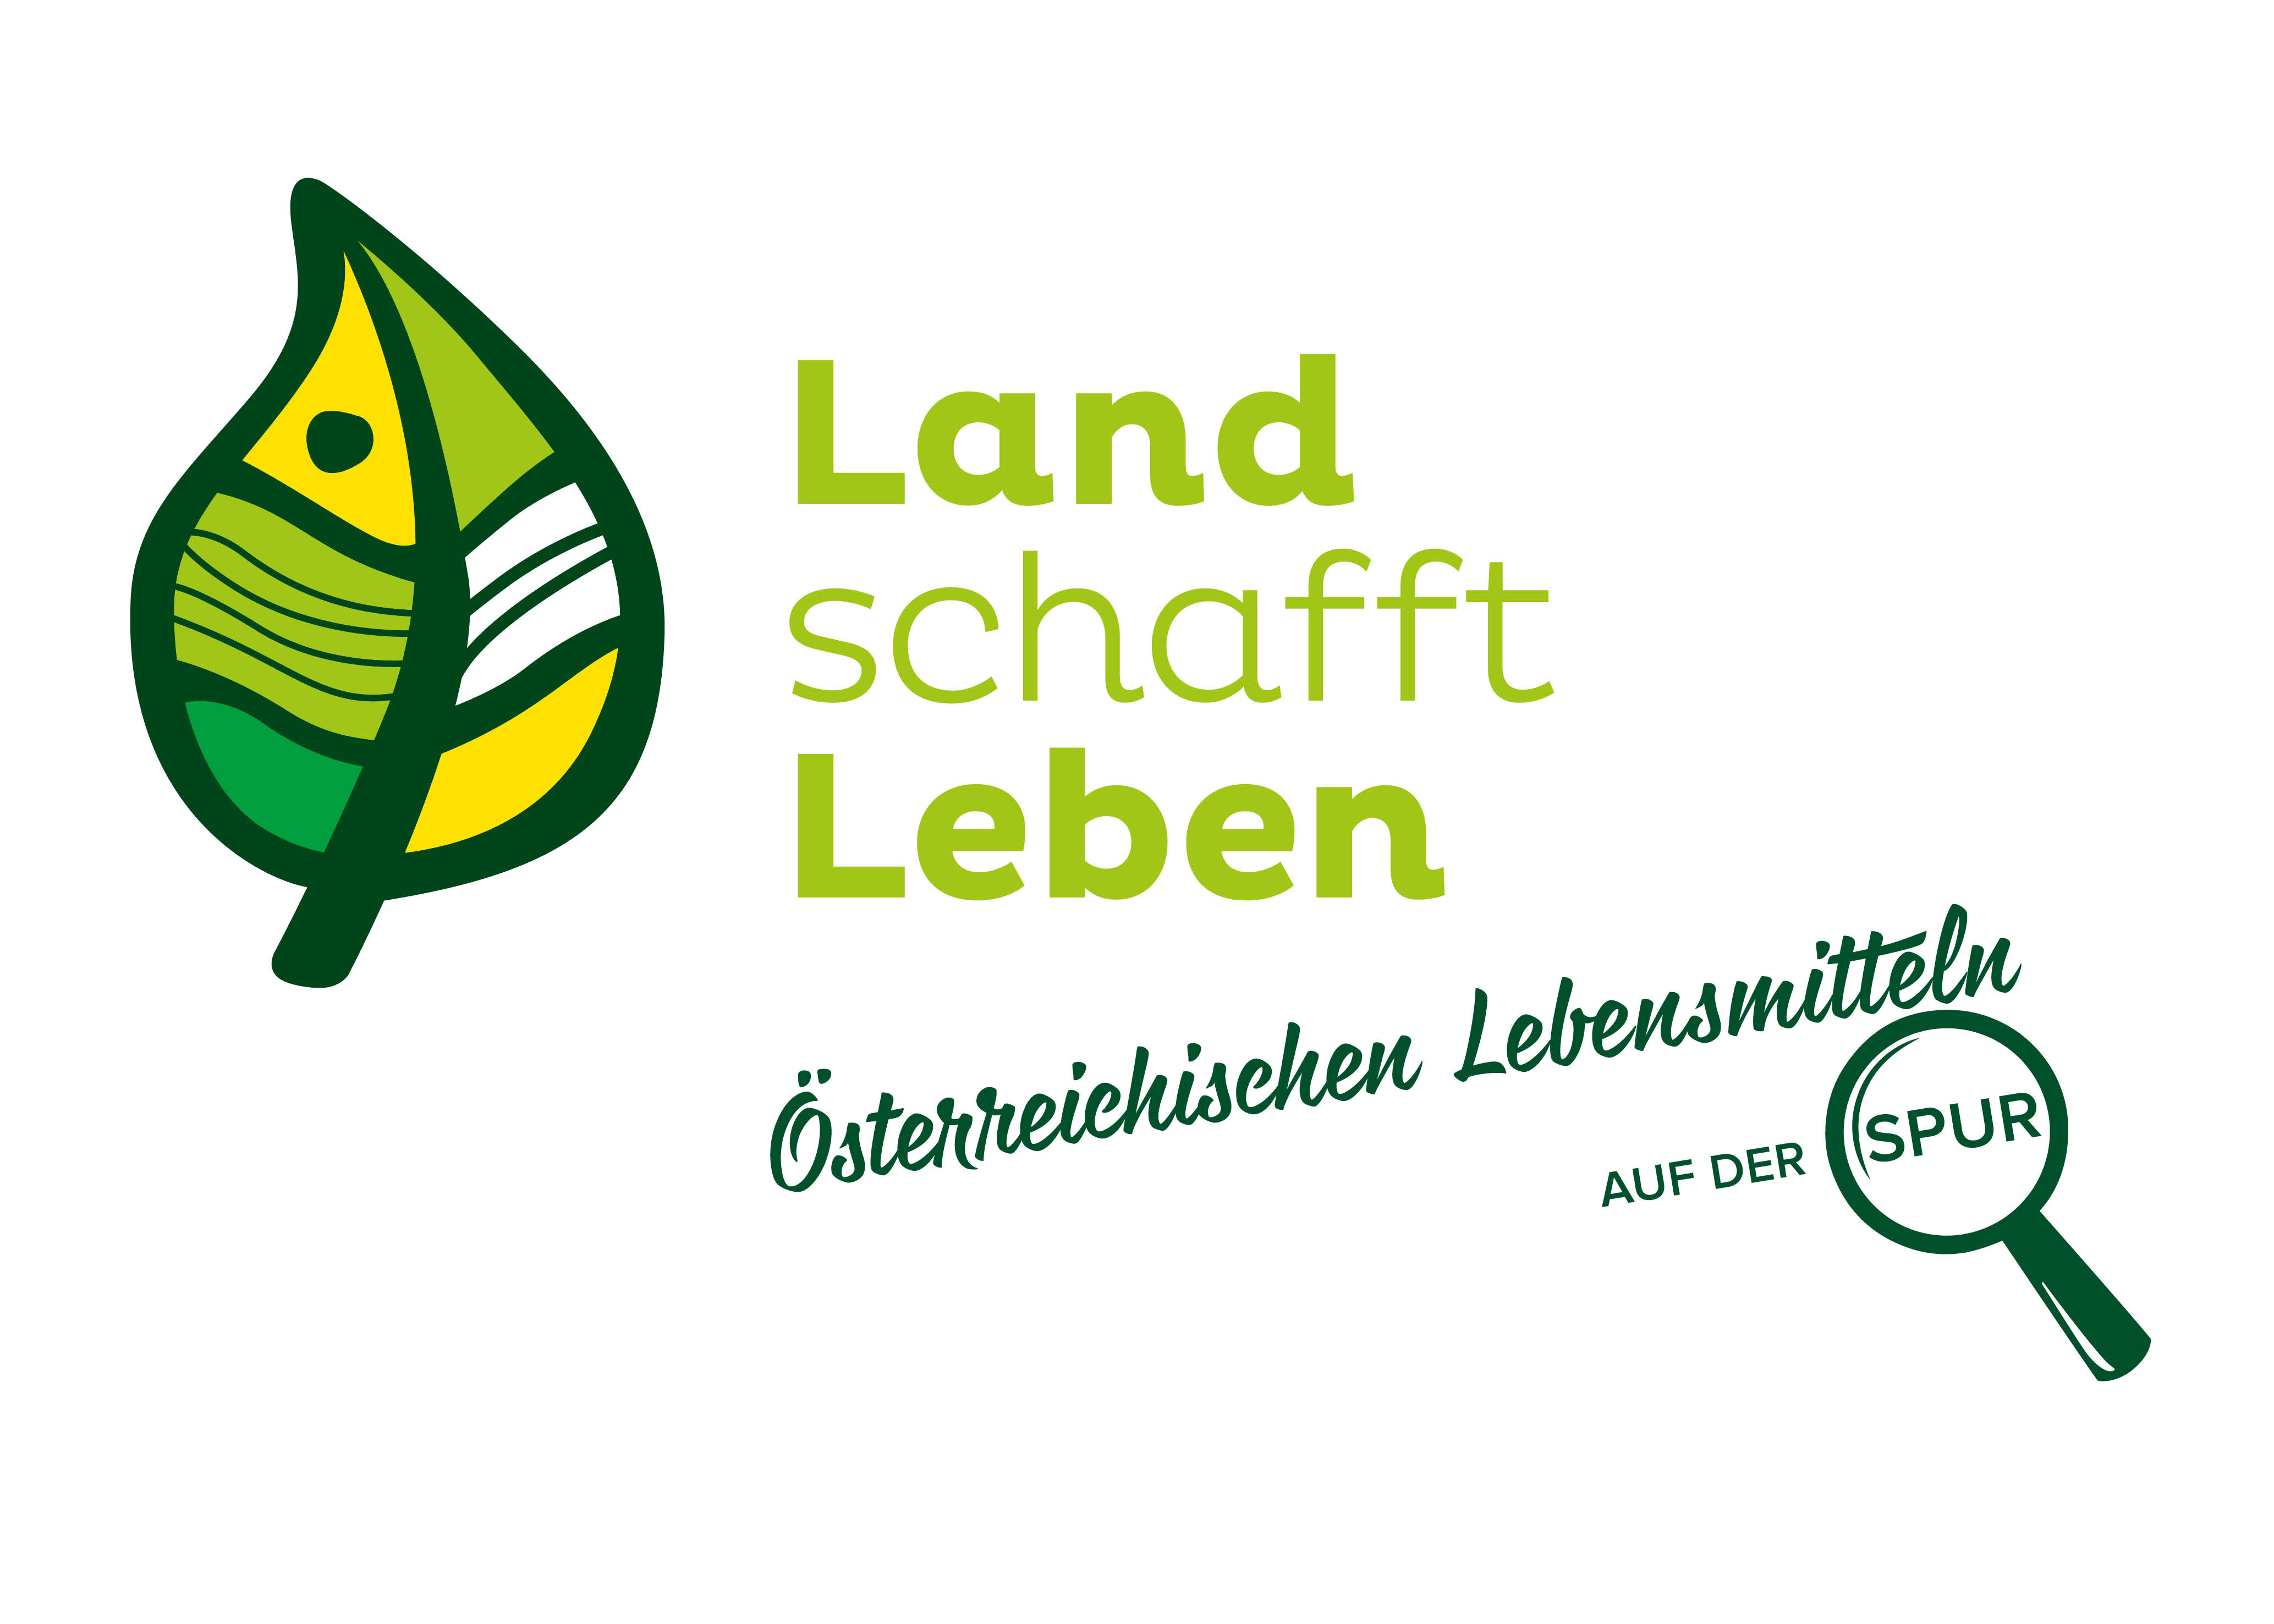 Eine Initiative für österreichische Landwirtschaft, Lebensmittel, Tierwohl und Bewusstsein.